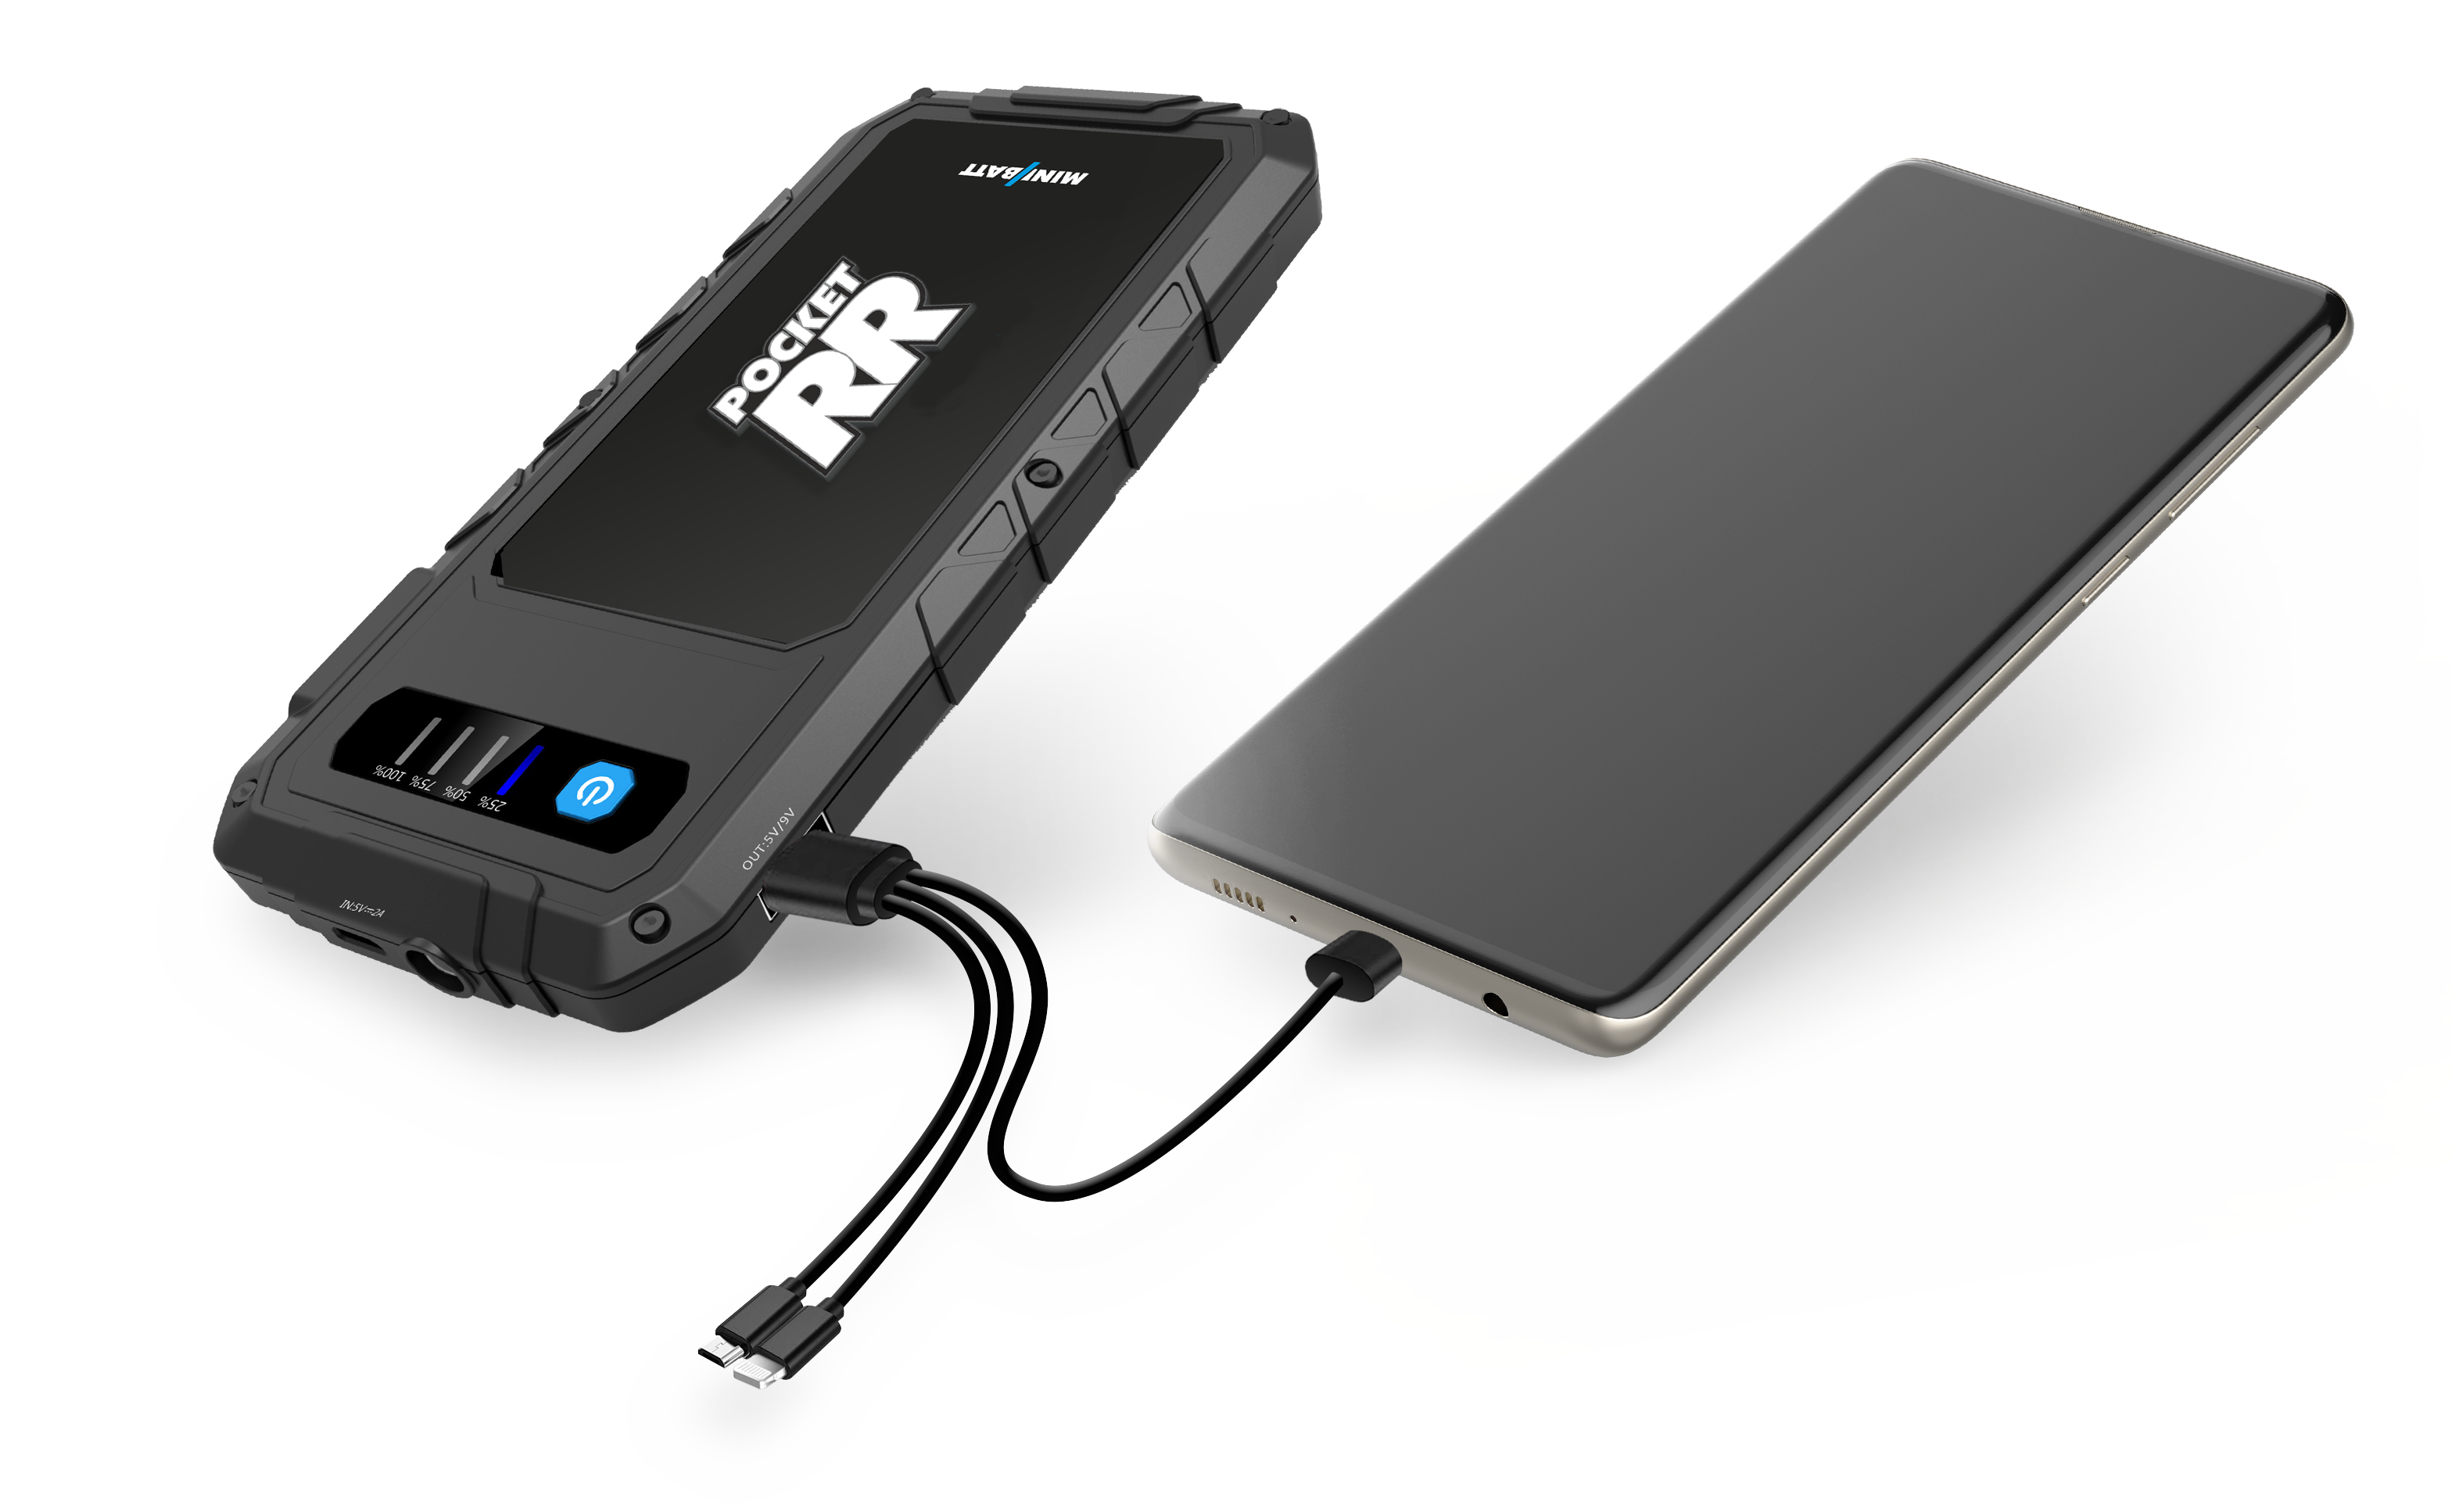 MiniBatt POCKET- Bateria arrancador de motos y coches. Cargador de móviles,  tablets y otros dispositivos